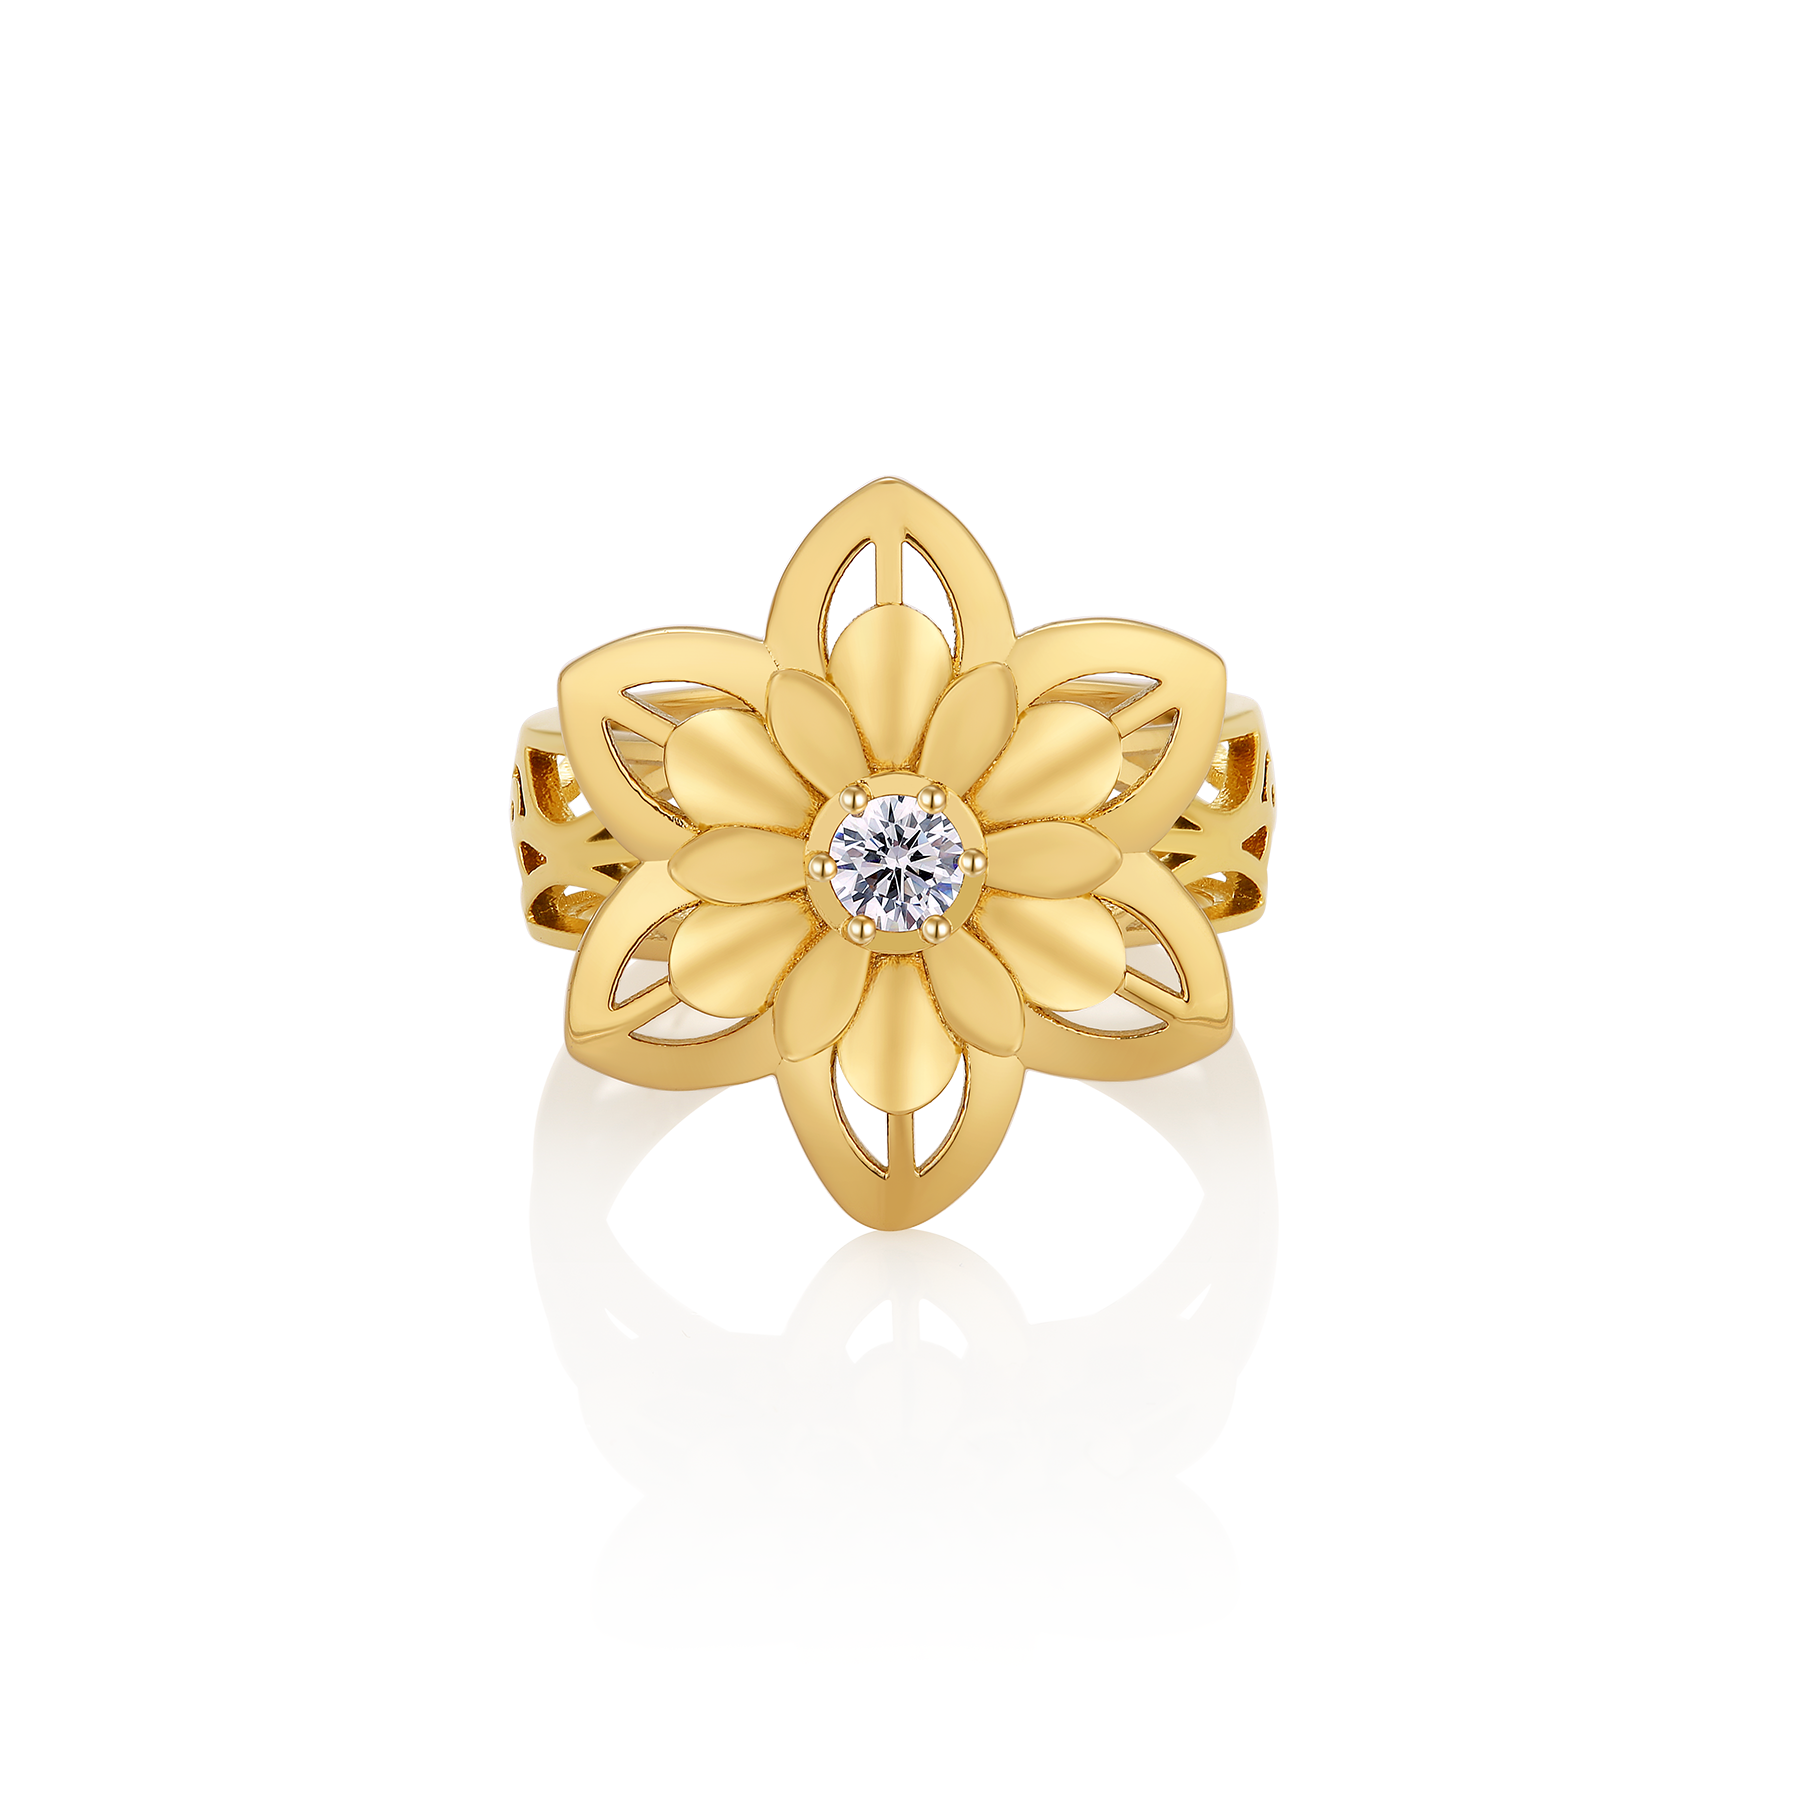 Original lotus design 18k gold plating ring jewelry